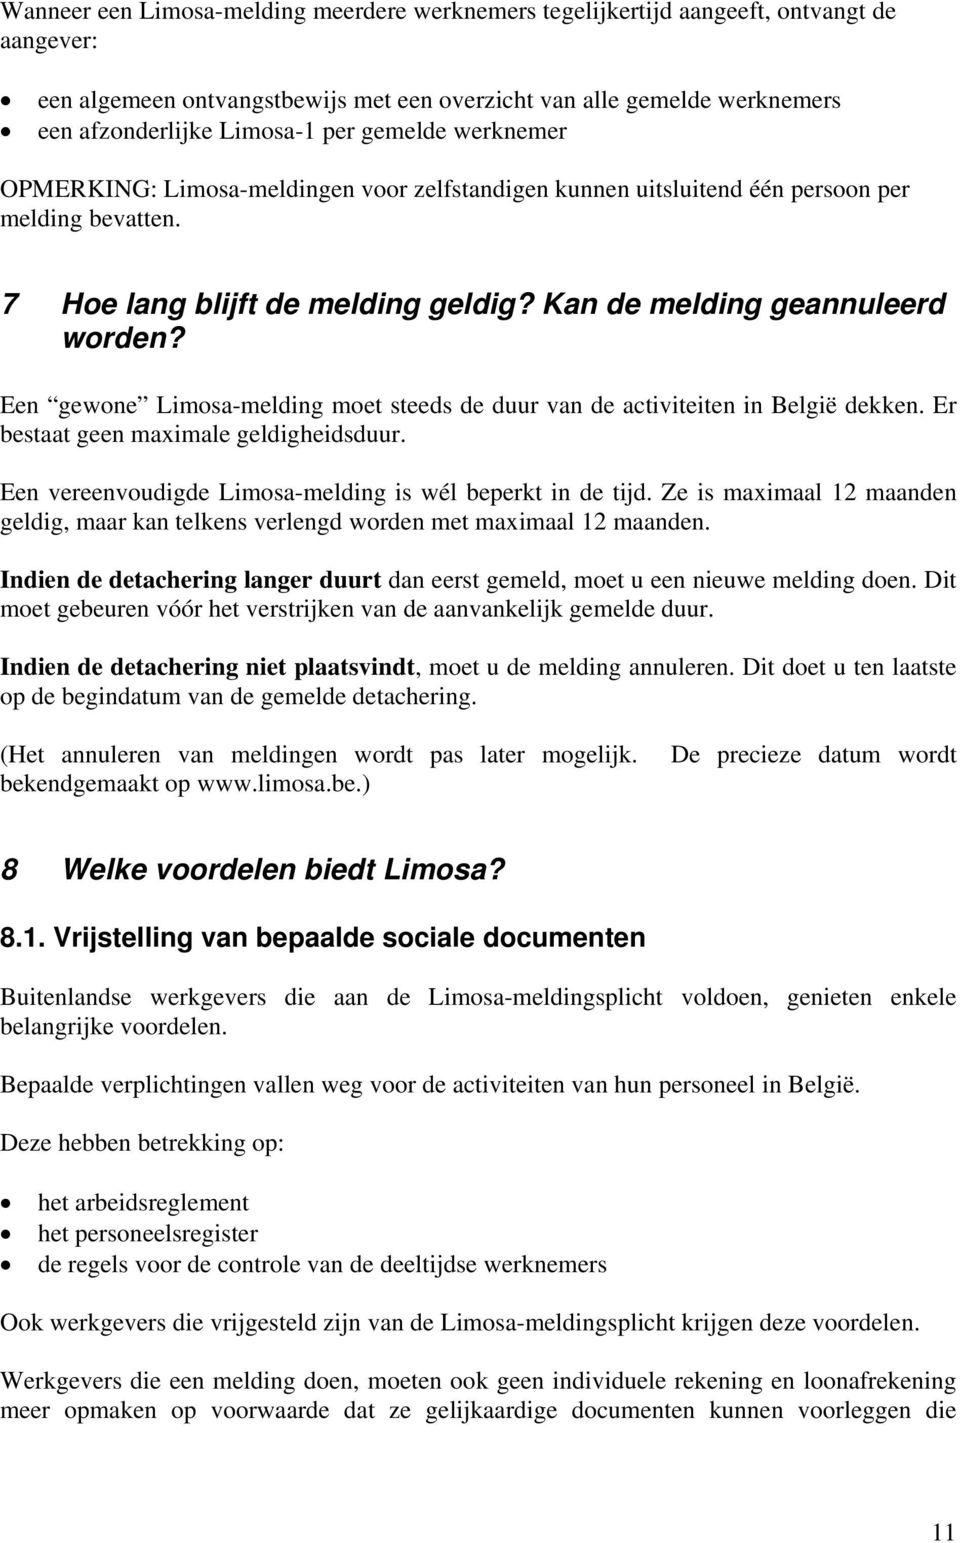 Een gewone Limosa-melding moet steeds de duur van de activiteiten in België dekken. Er bestaat geen maximale geldigheidsduur. Een vereenvoudigde Limosa-melding is wél beperkt in de tijd.